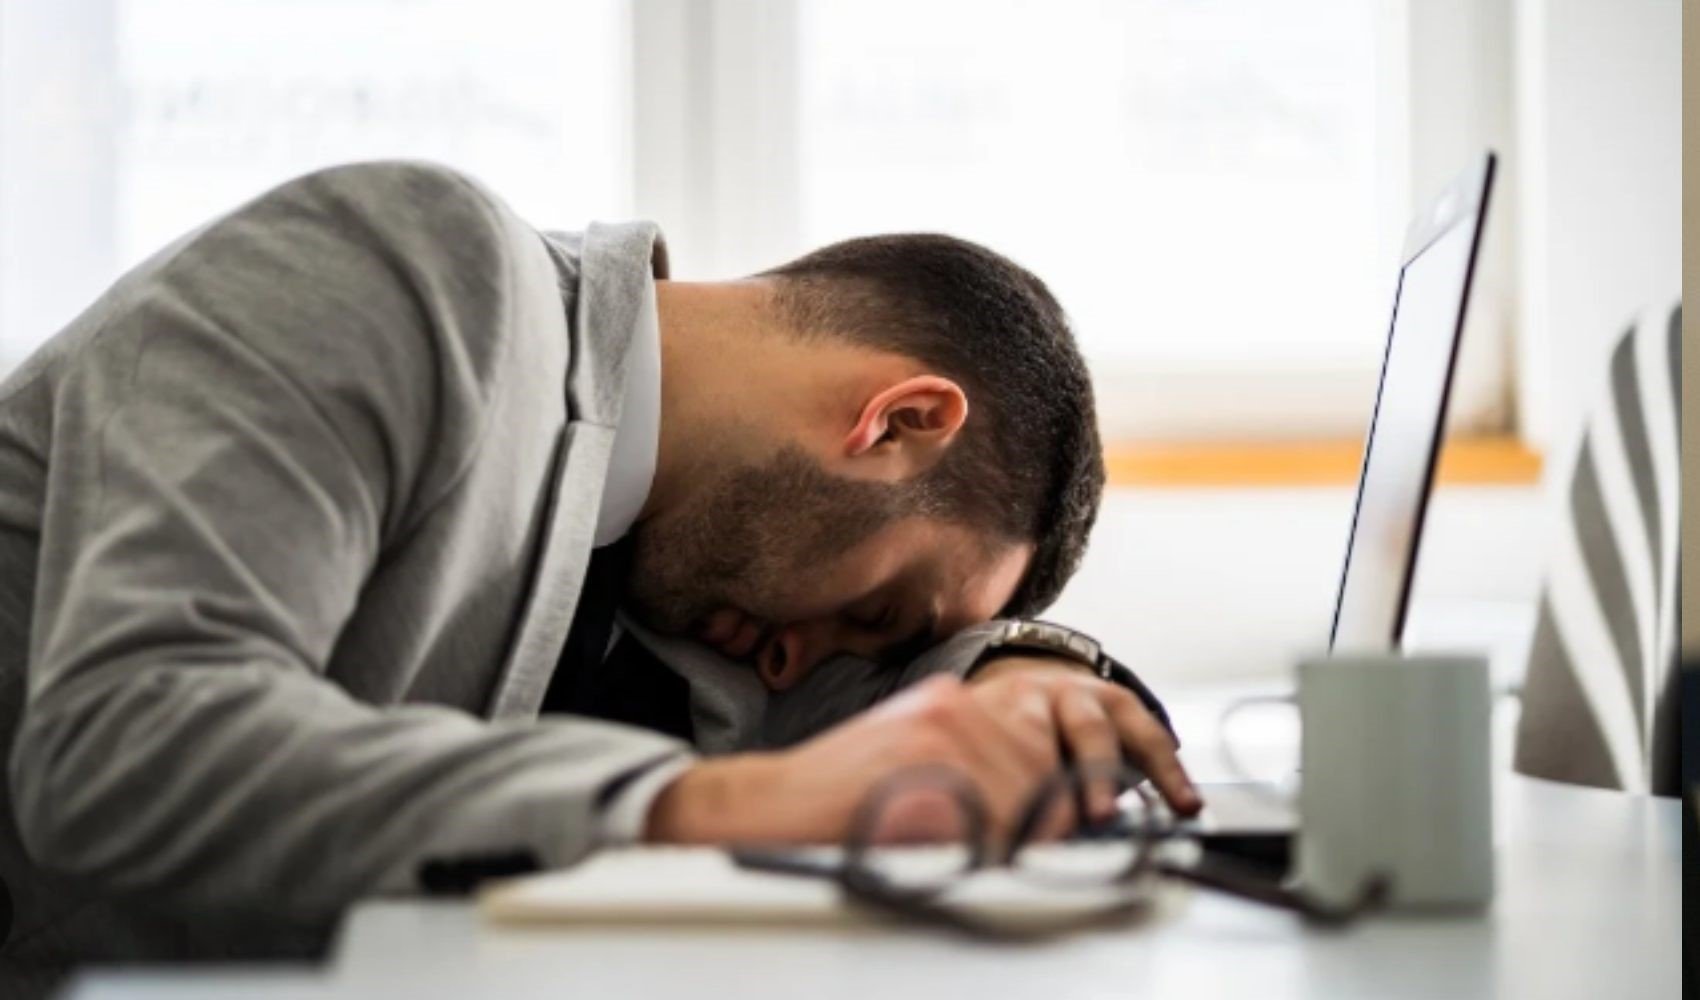 Kronik yorgunluktan daha tehlikeli: Çağın hastalığı Hiper yorgunluk